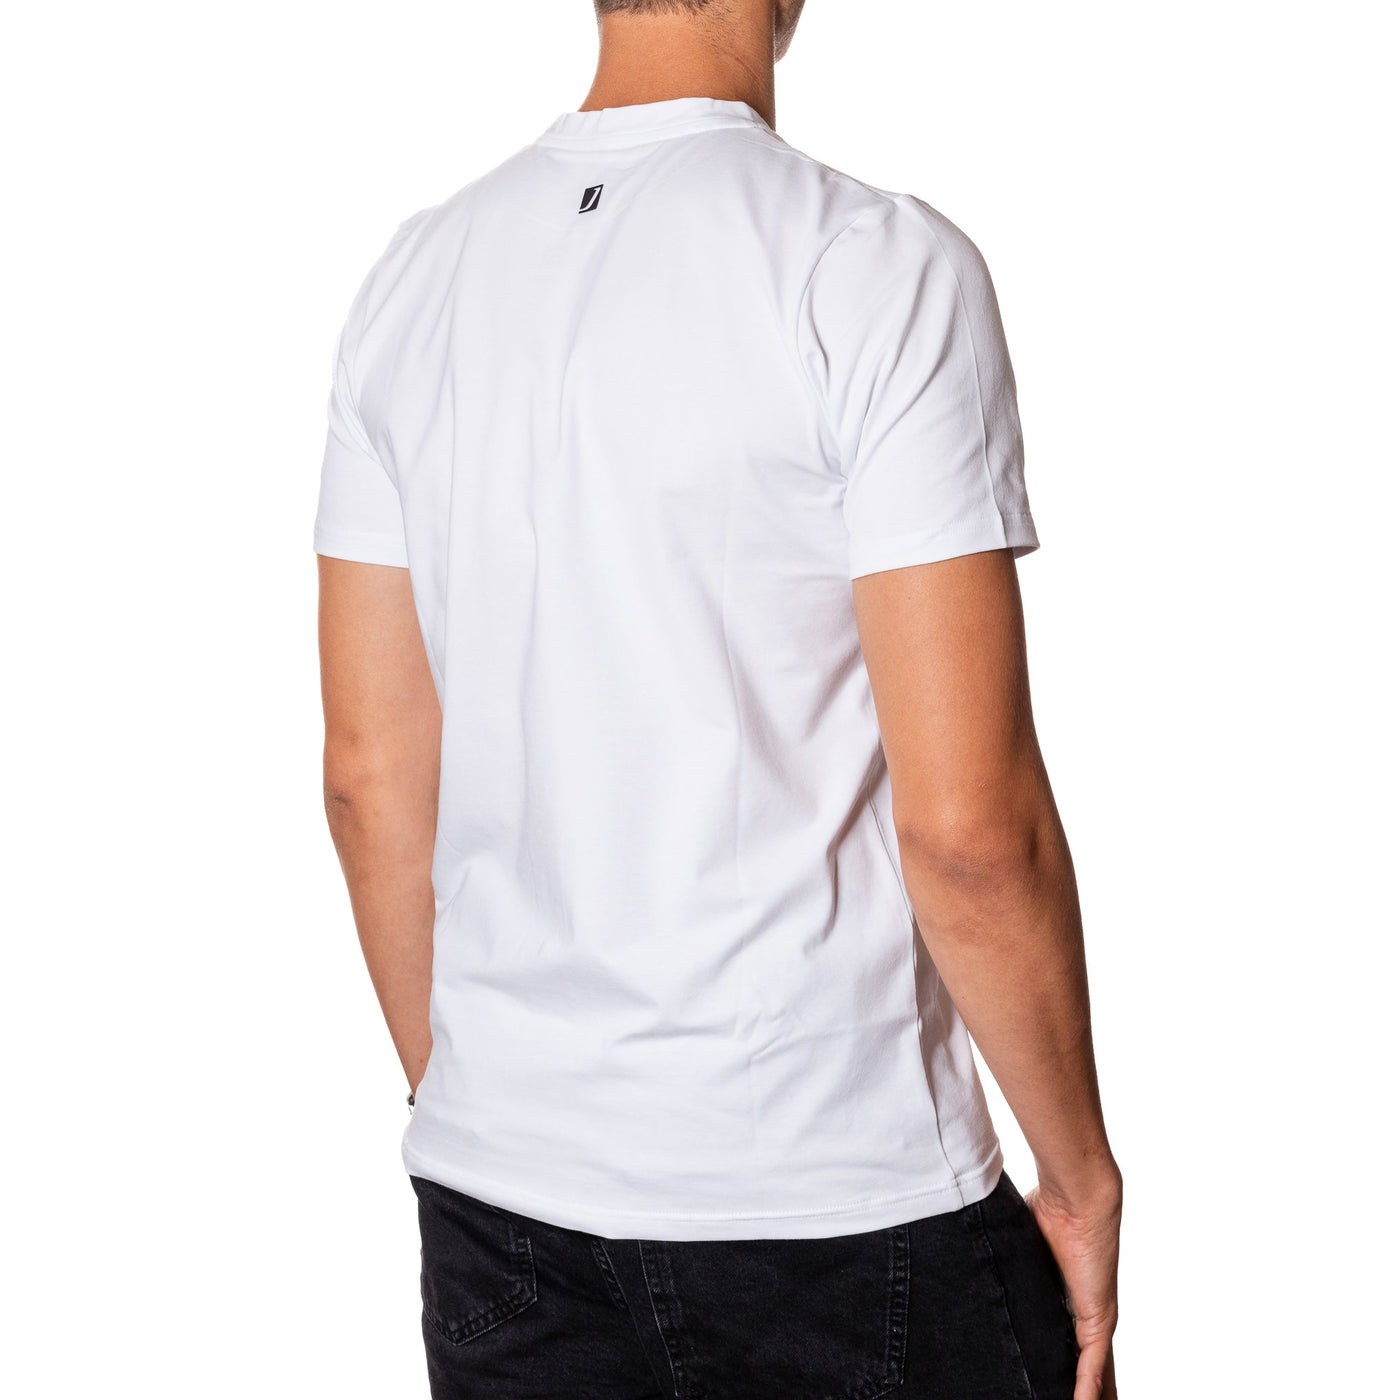 T-shirt symbol biały/czarny